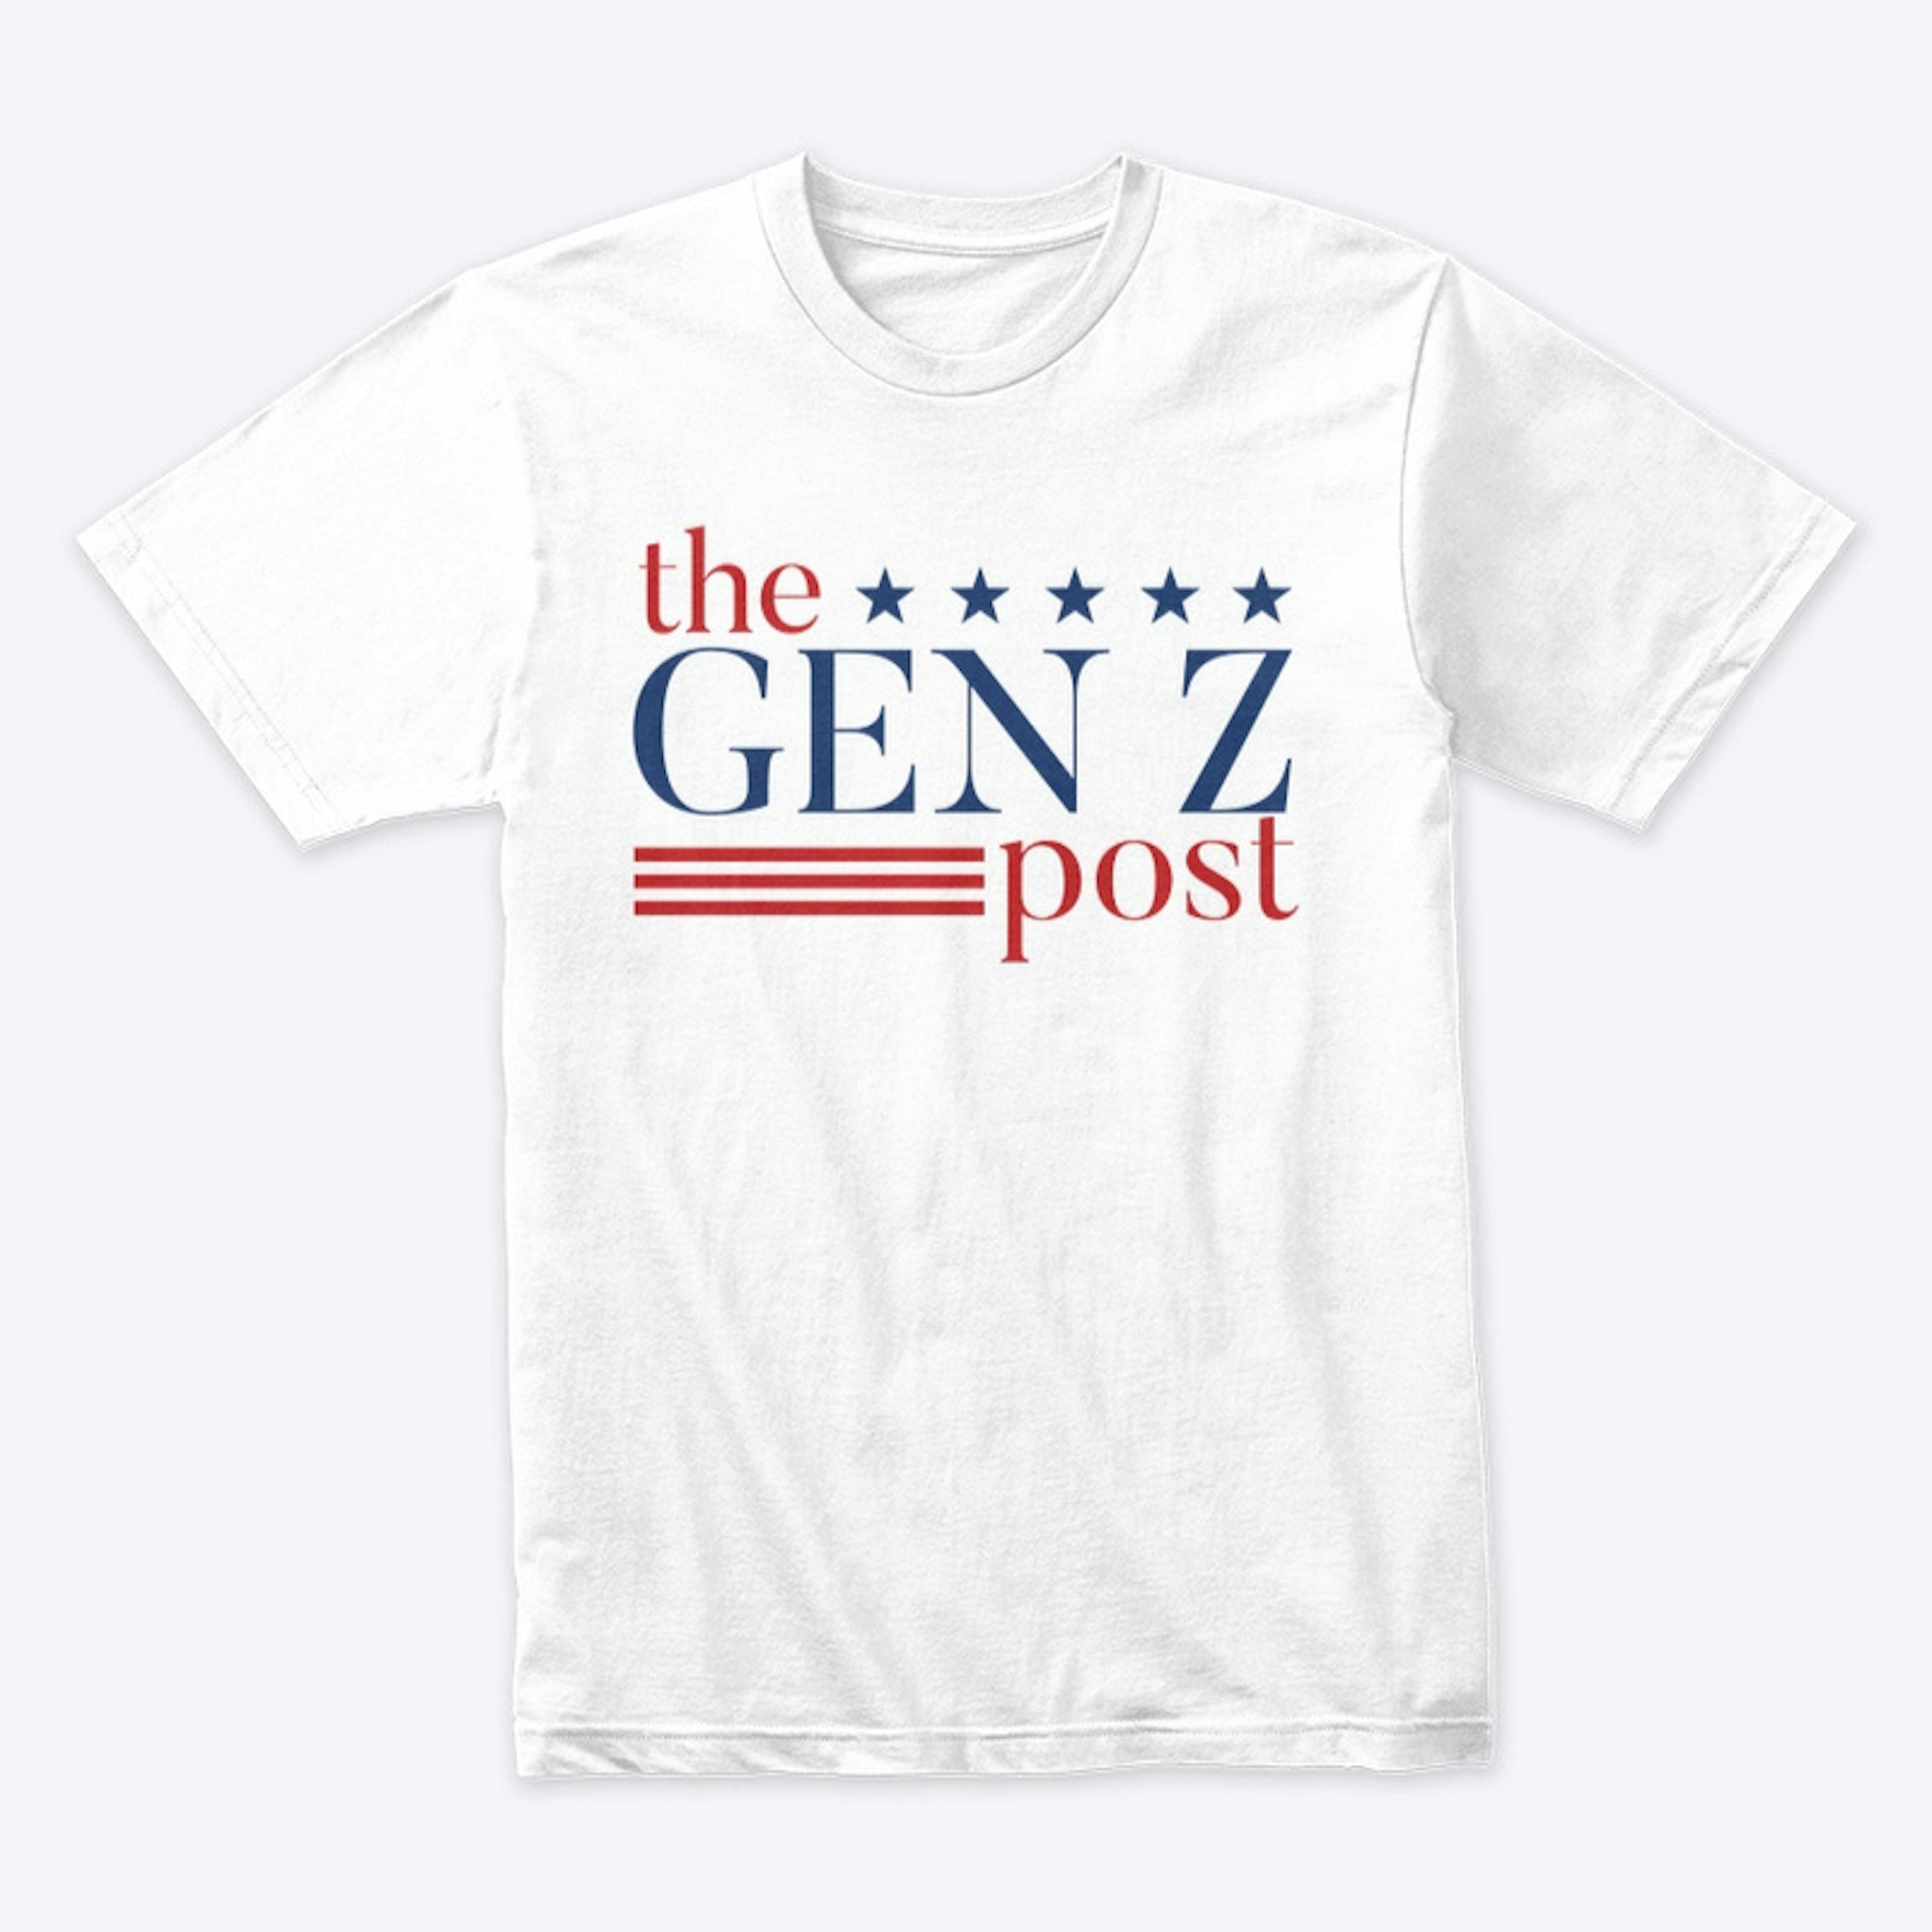  THE GEN Z POST ~ Official Merch